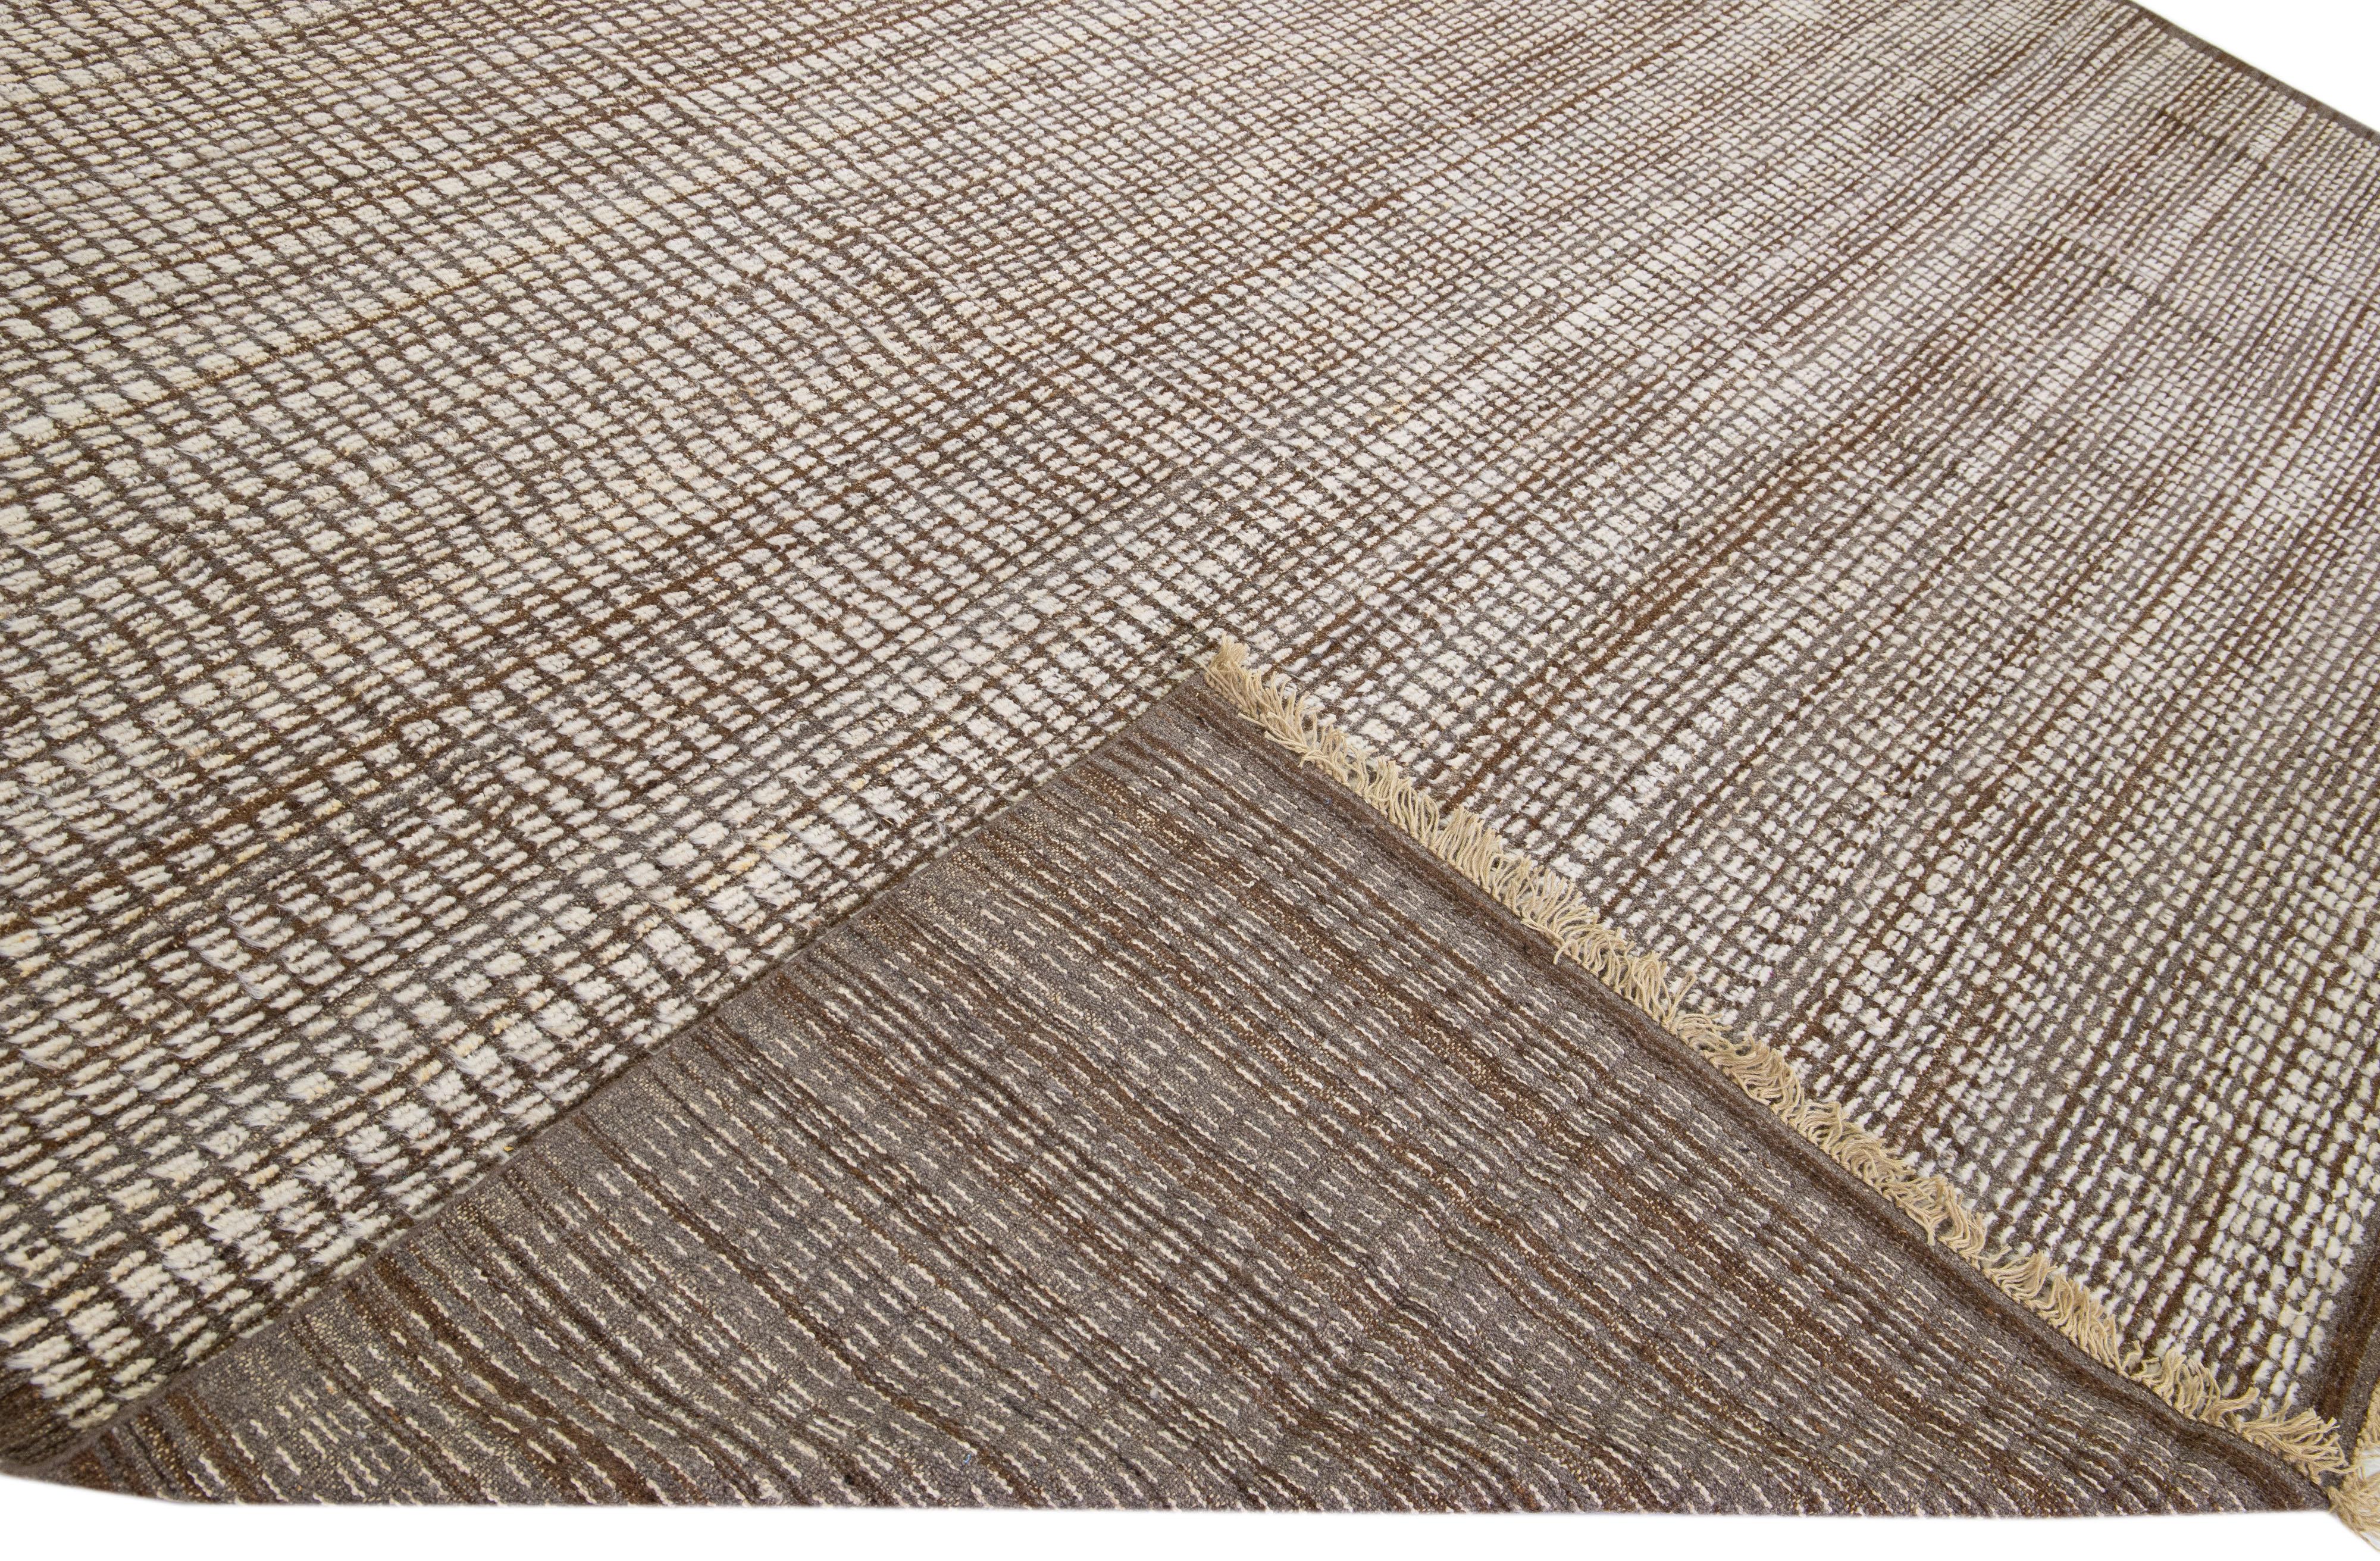 Magnifique tapis moderne en laine nouée à la main de style marocain avec un champ brun. Cette pièce présente un magnifique motif géométrique subtil.

Ce tapis mesure : 12'5